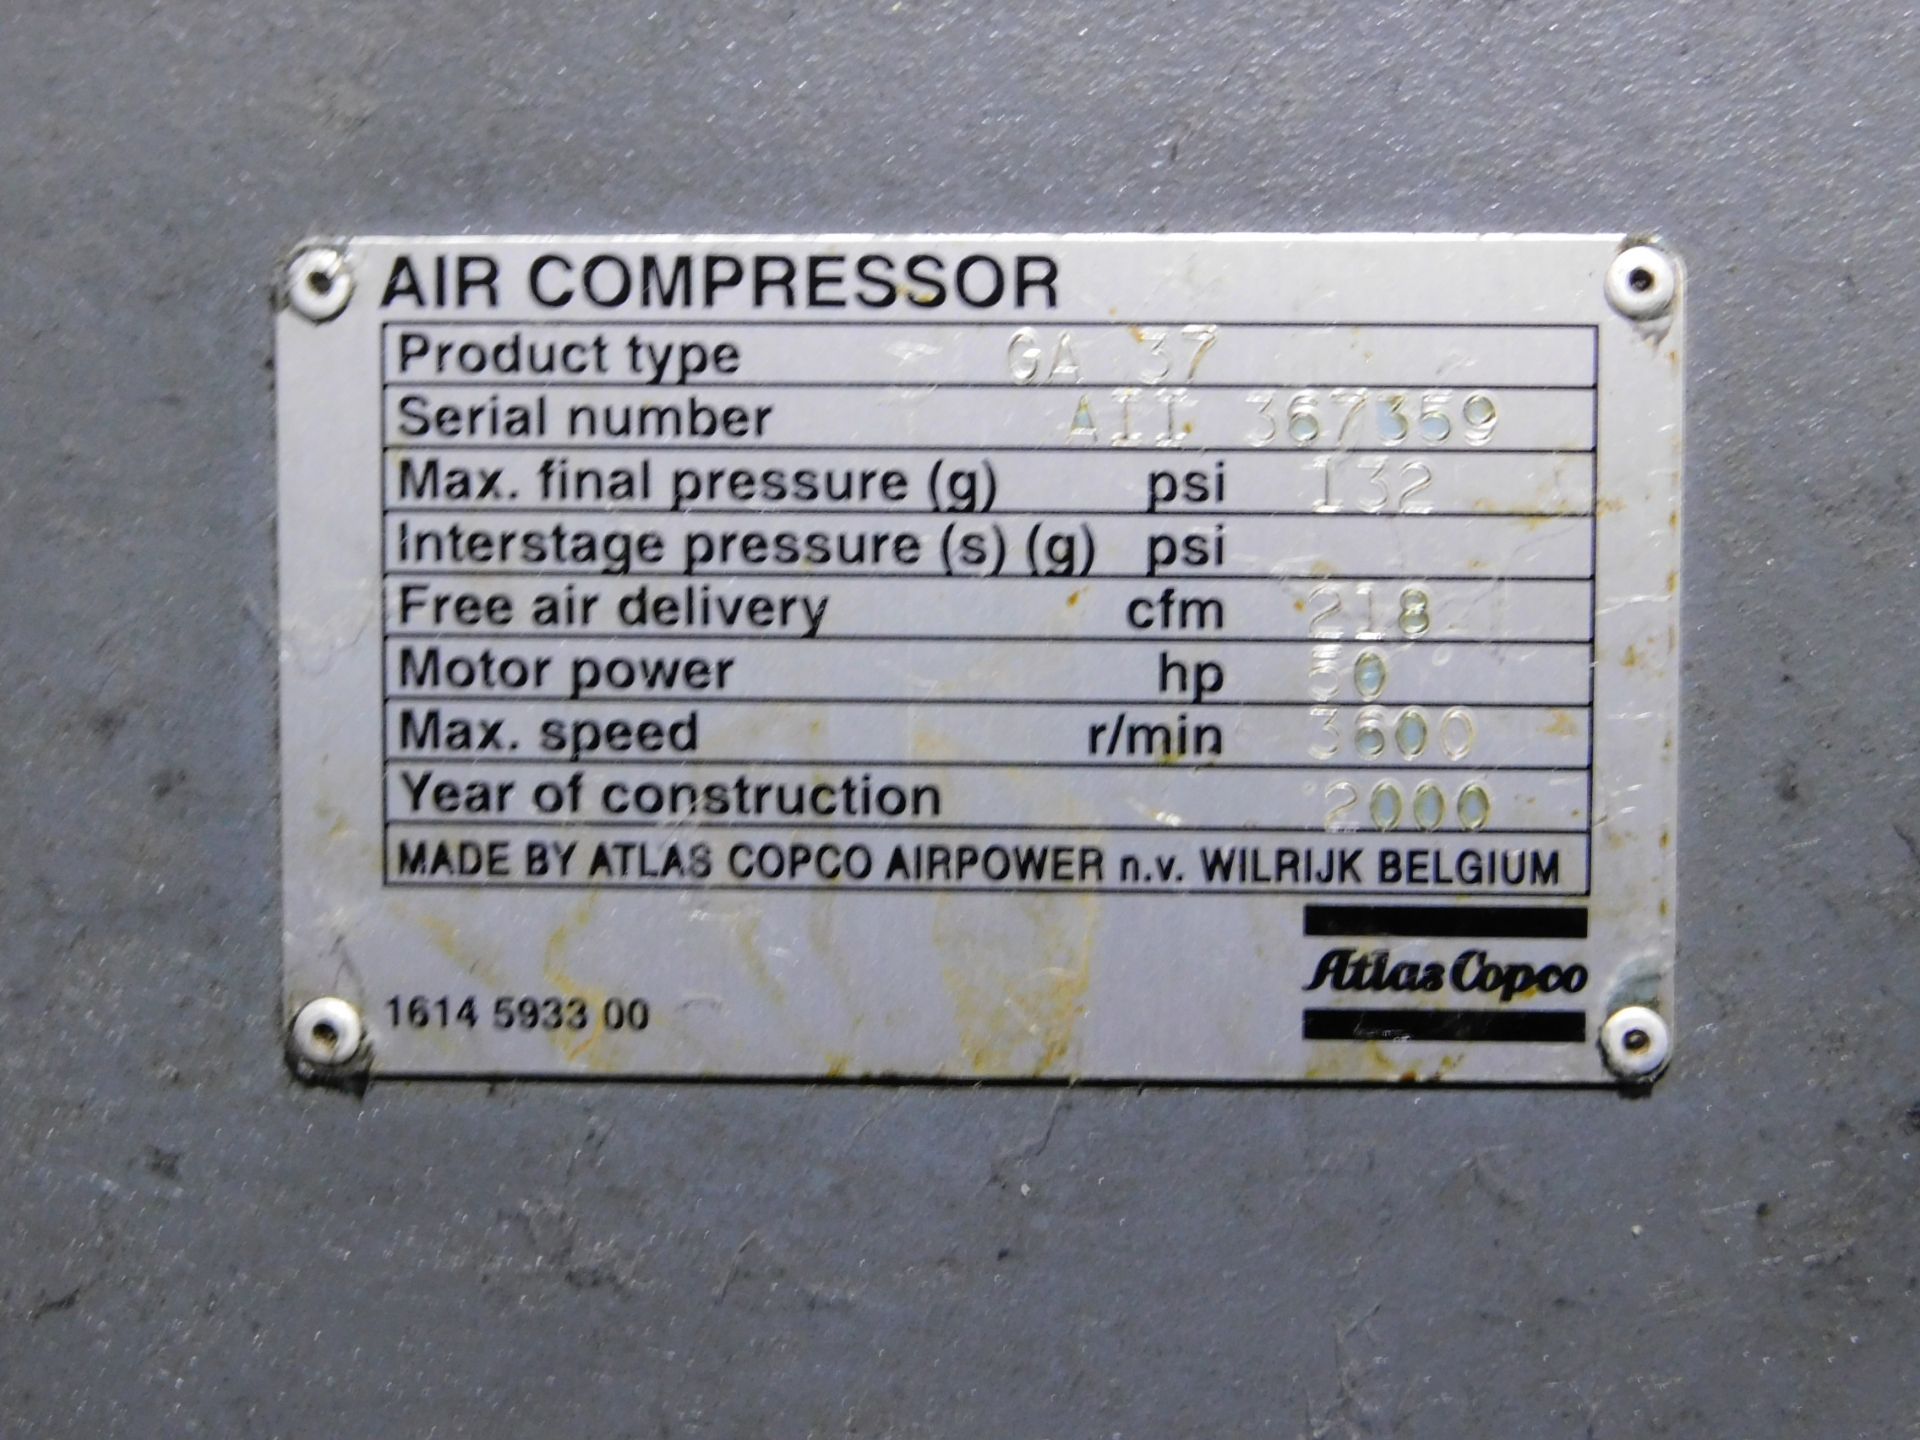 Atlas Copco Model GA37 Rotary Screw Air Compressor, s/n AII367359, 50 HP, 218 CFM at 132 PSI - Image 4 of 4